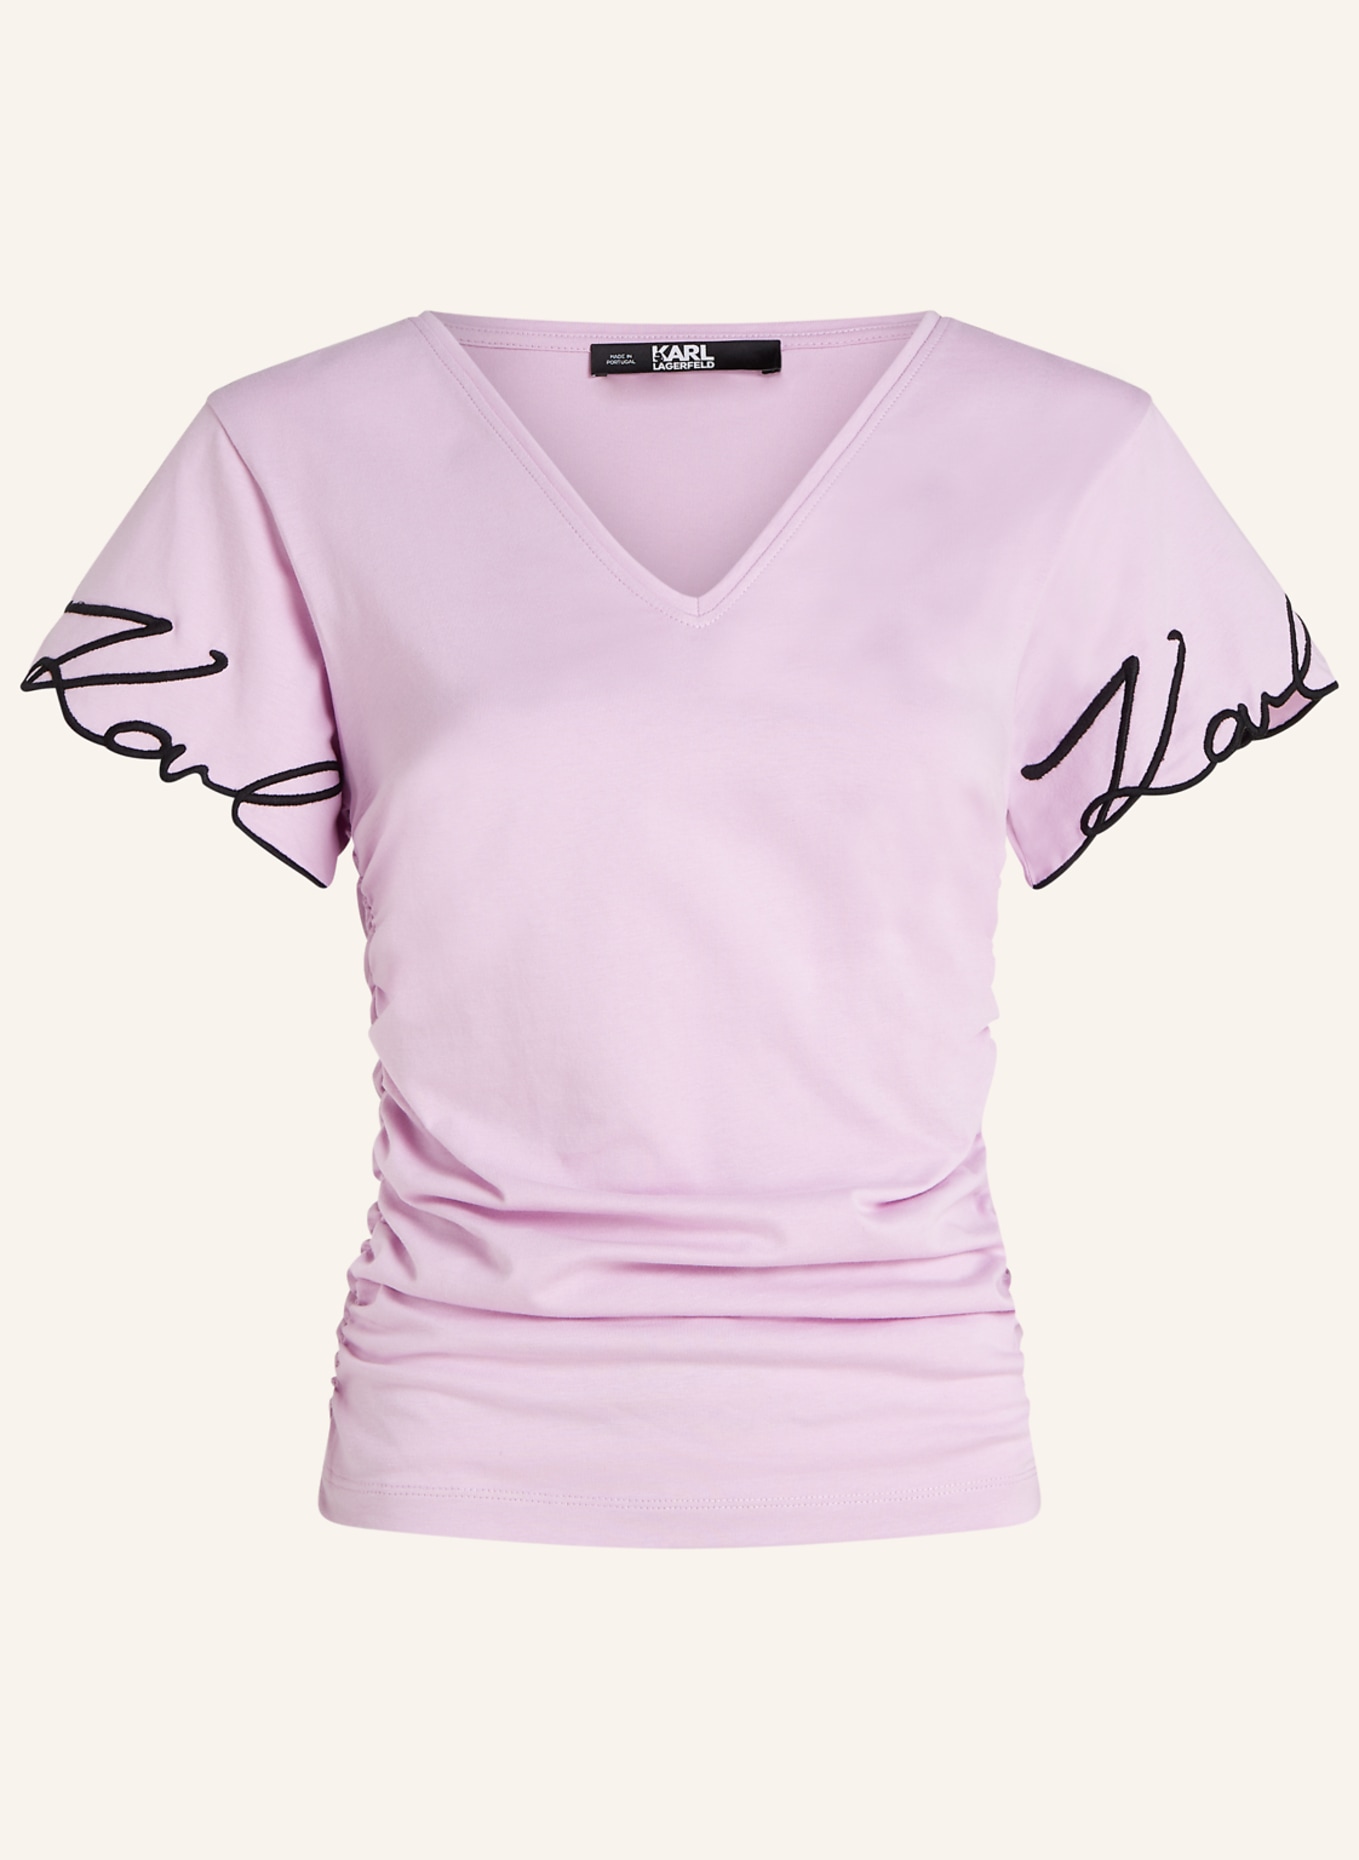 KARL LAGERFELD T-shirt, Farbe: LILA (Bild 1)